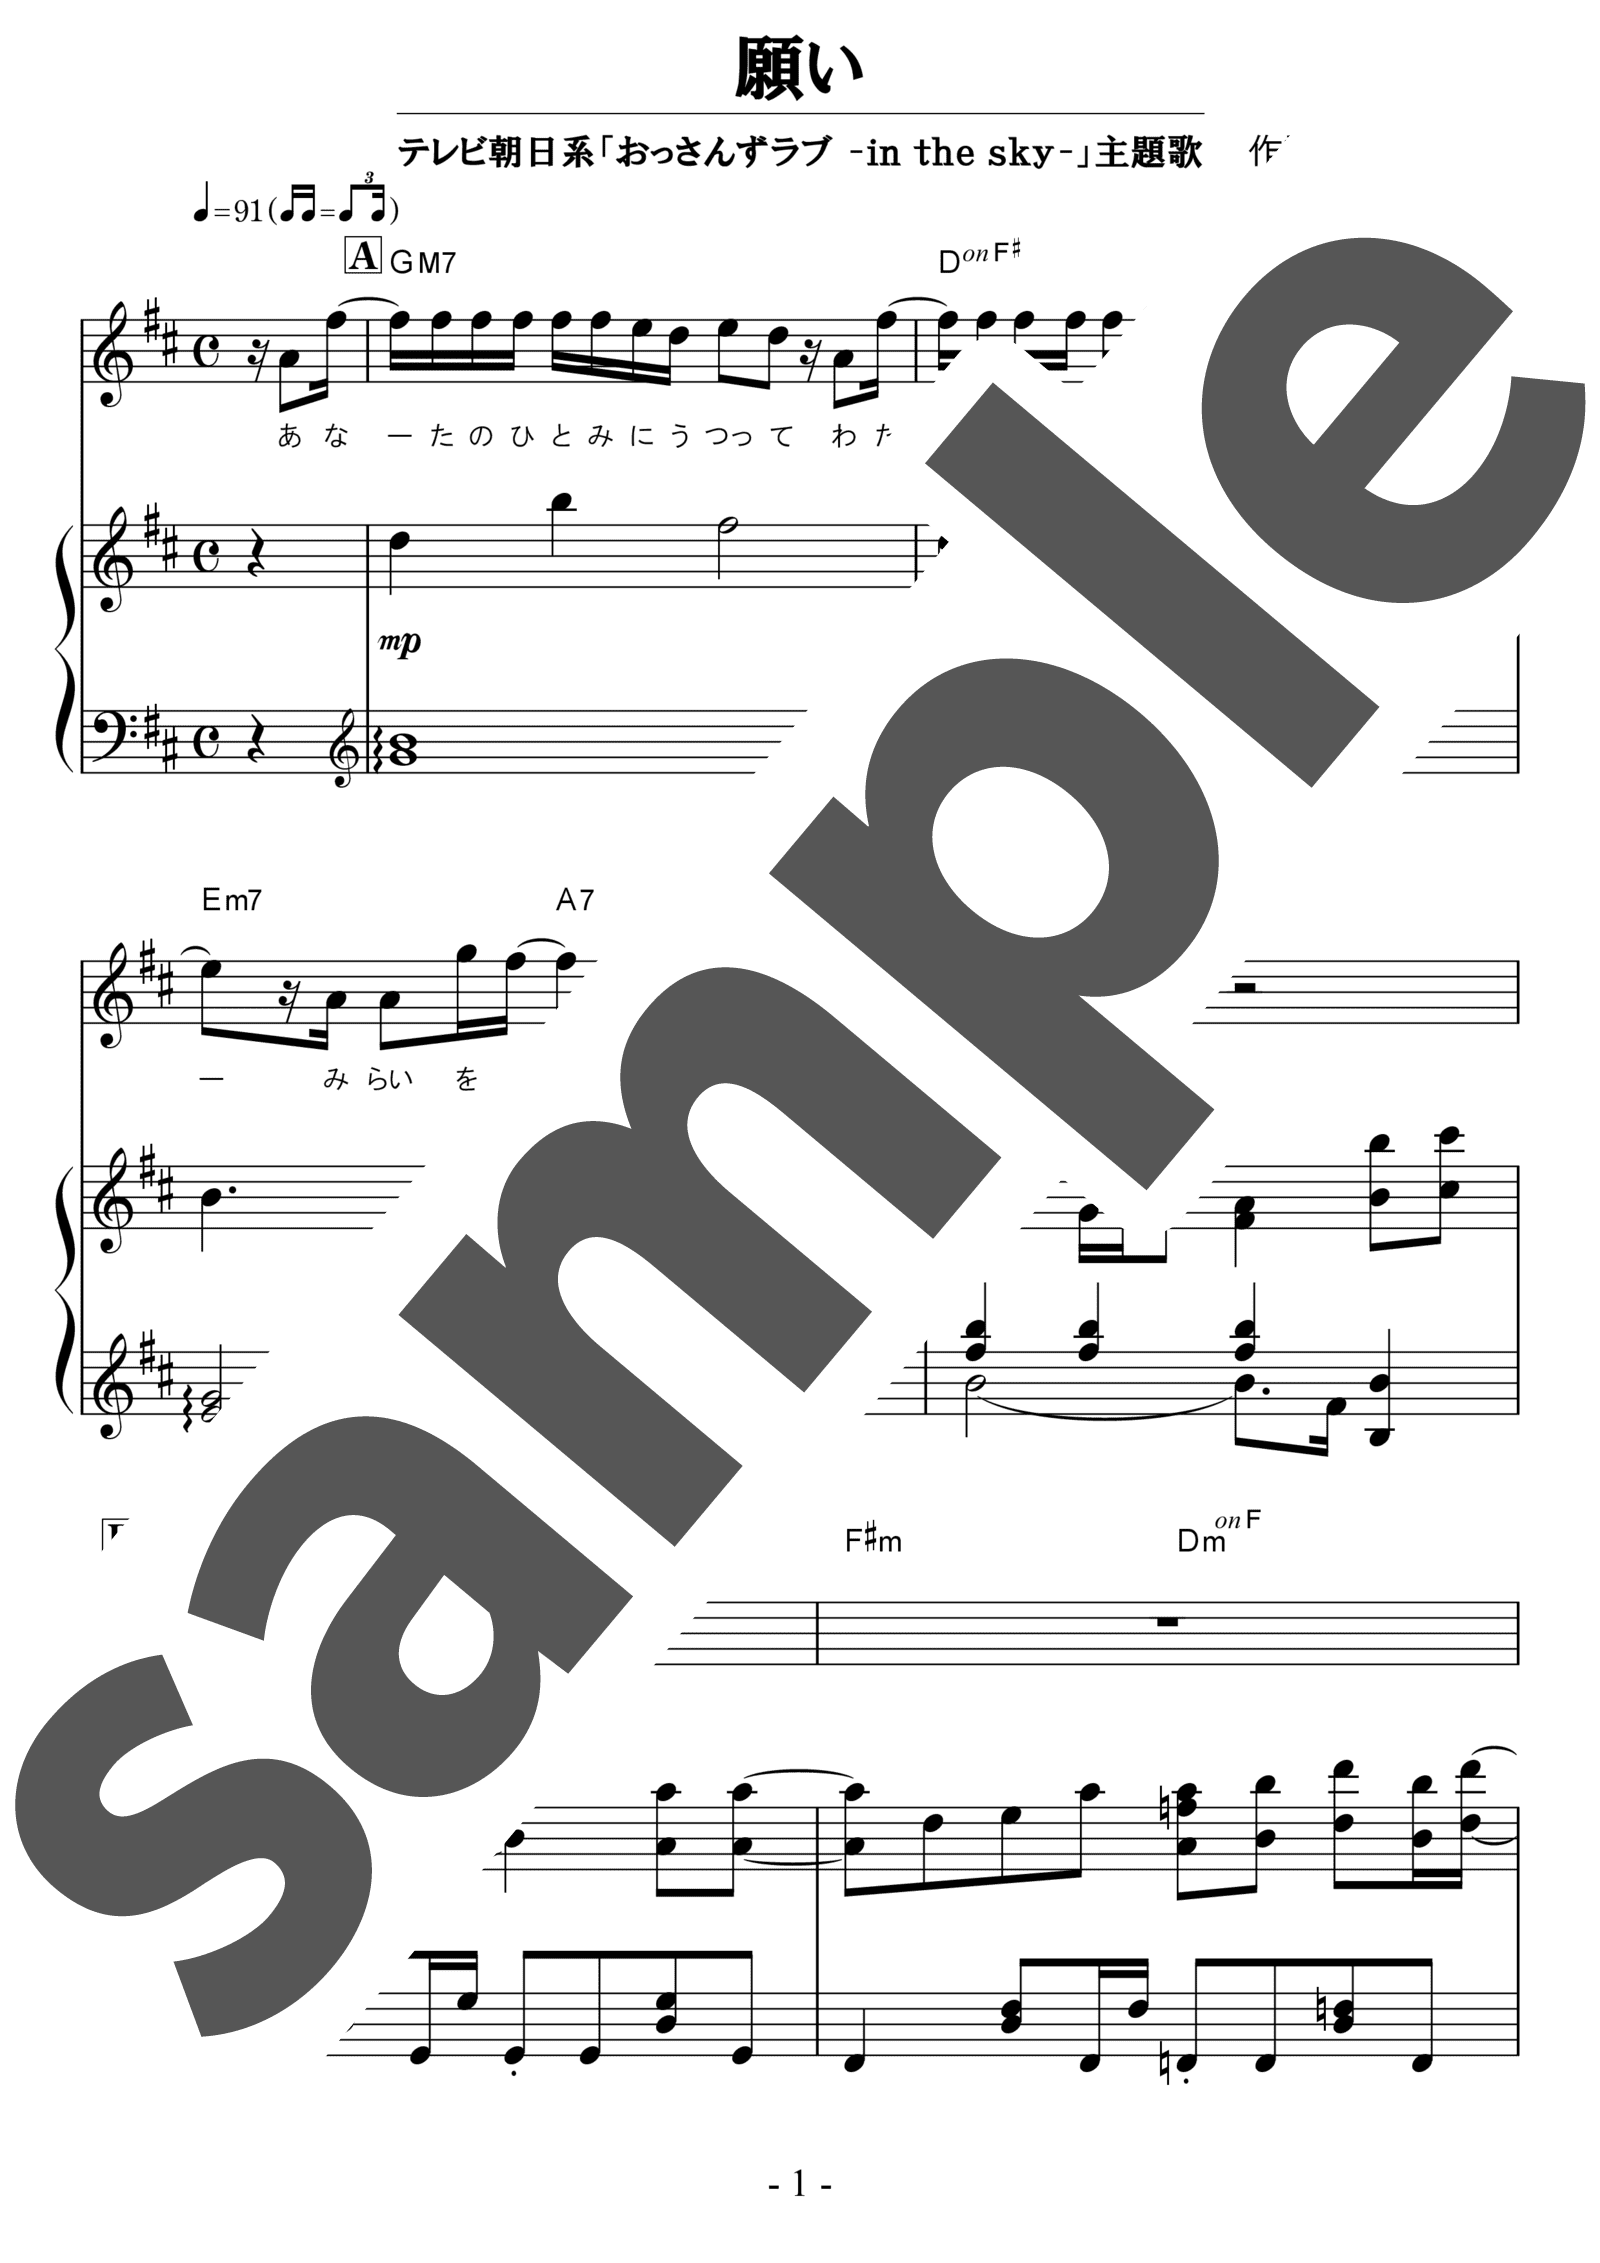 ピアノ楽譜 願い Sumika 弾き語り 中級 電子楽譜カノン